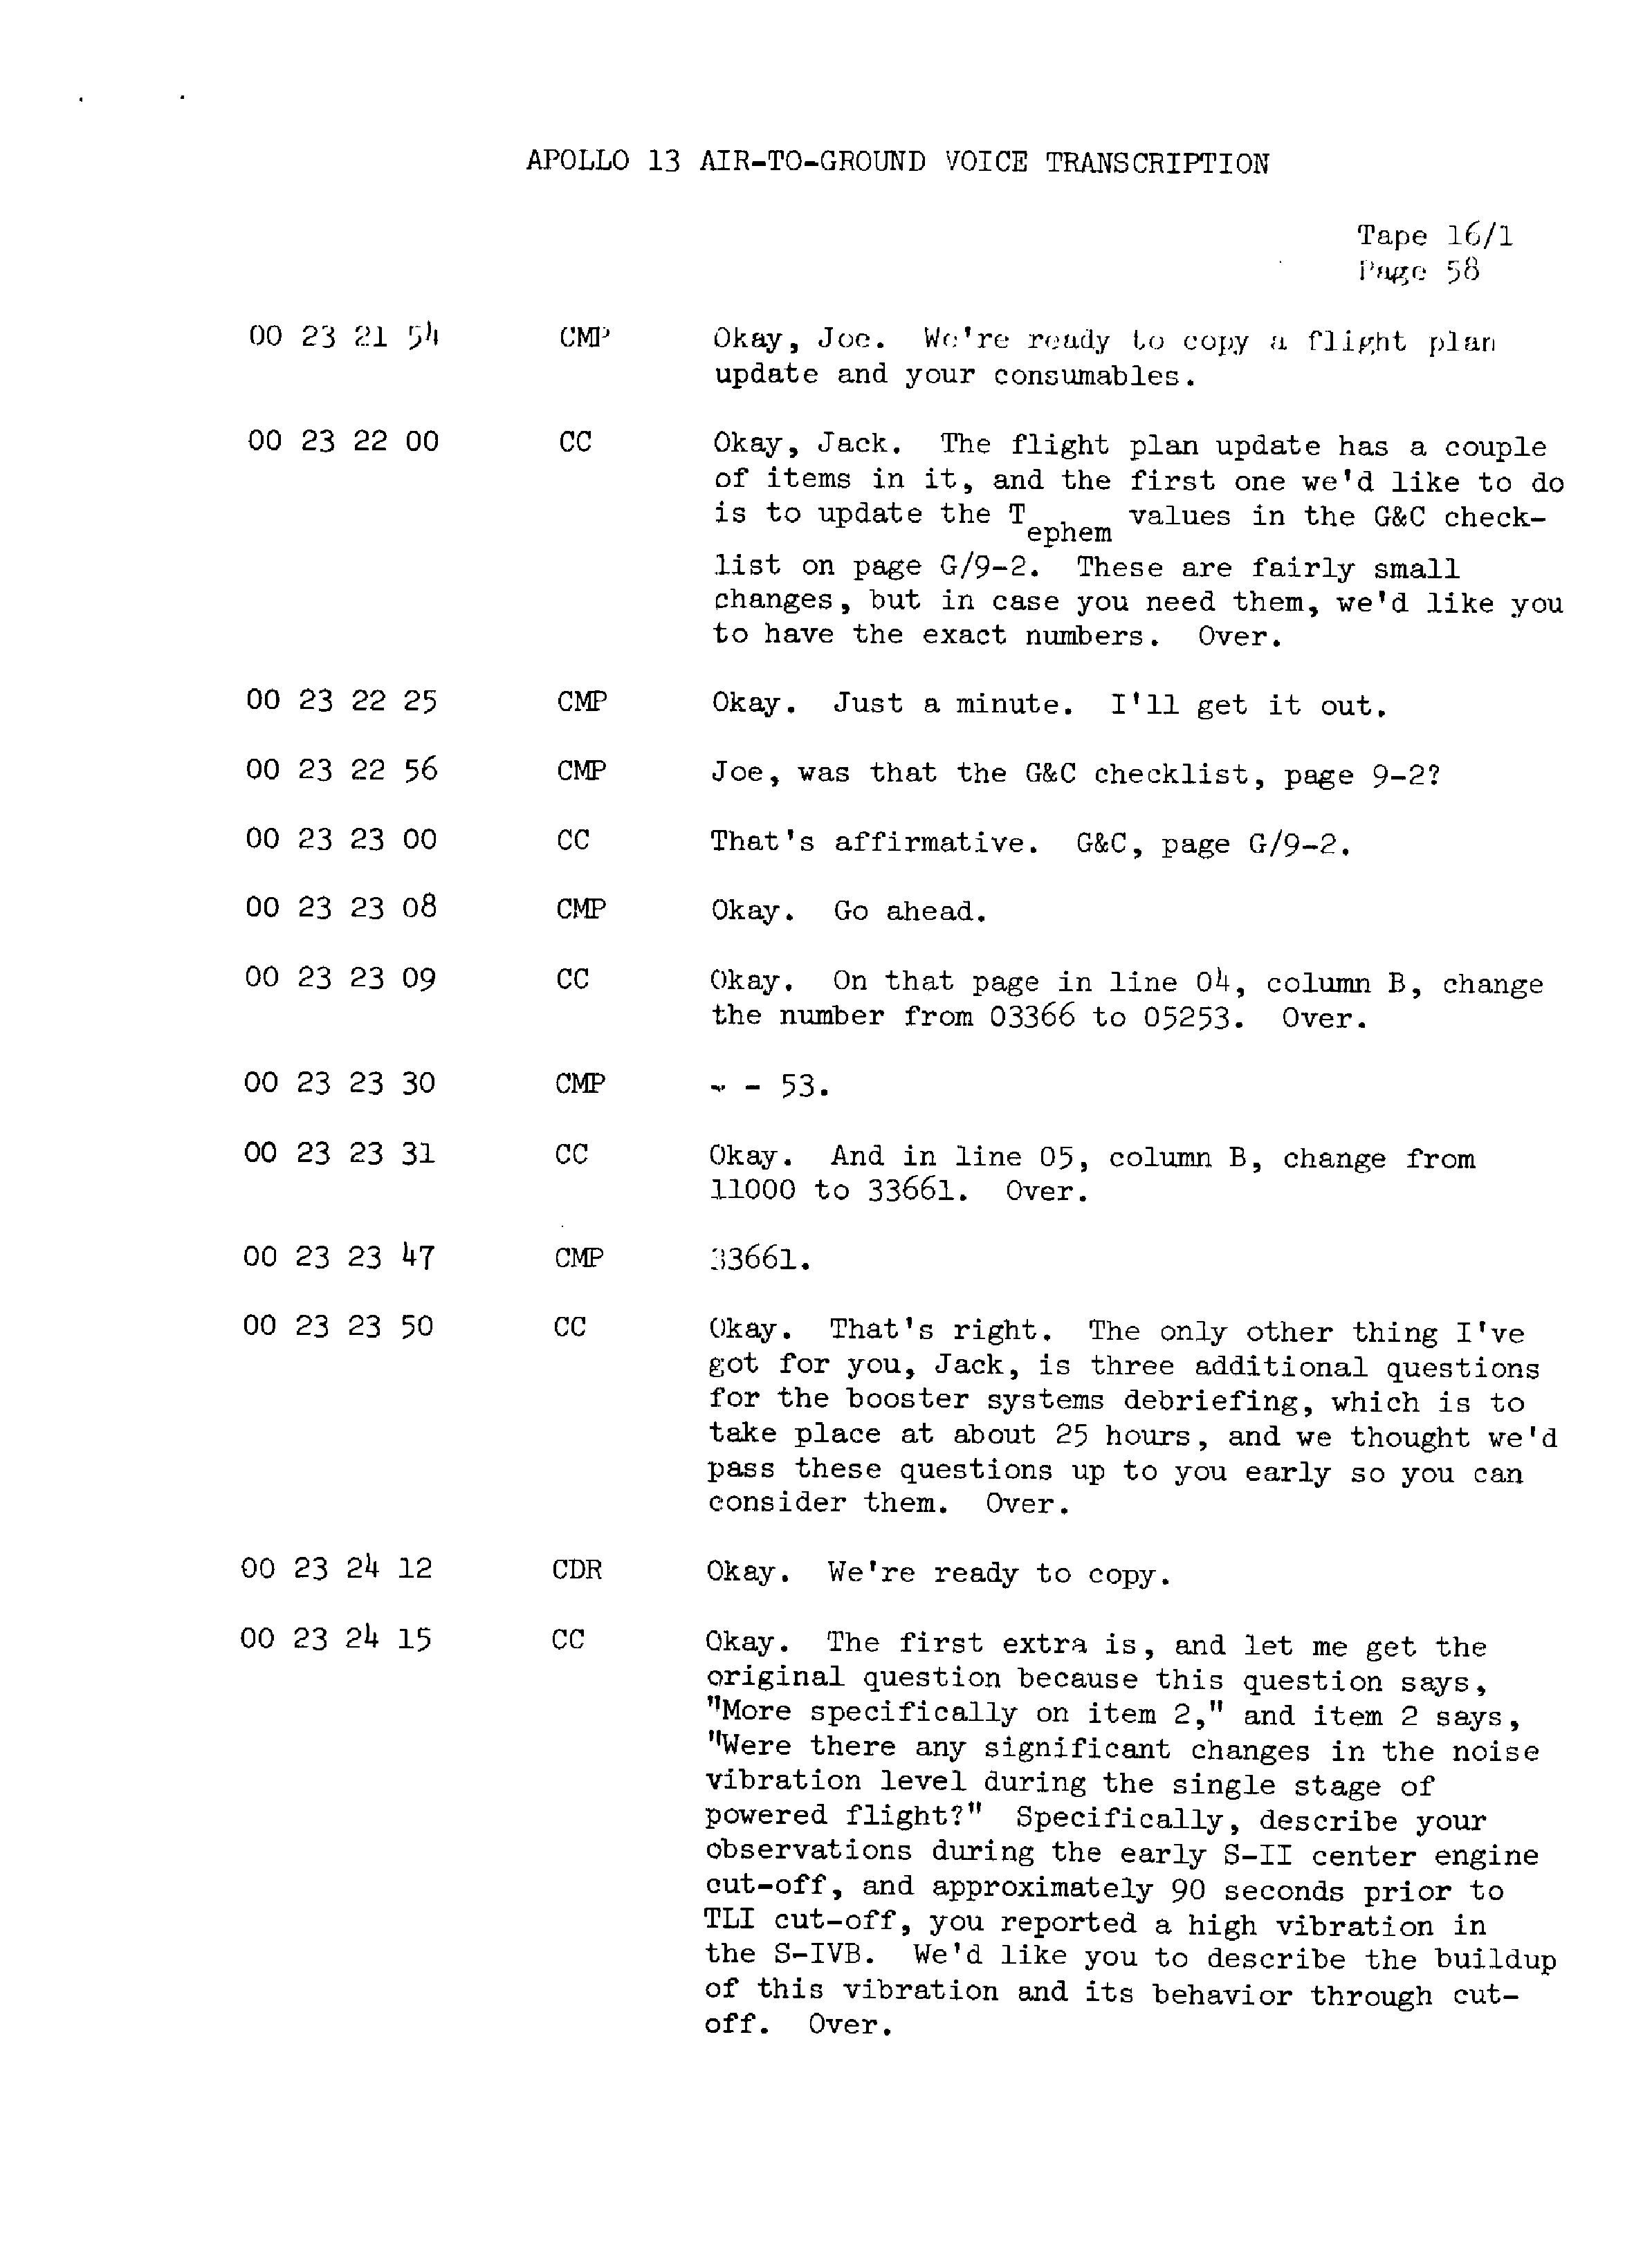 Page 65 of Apollo 13’s original transcript